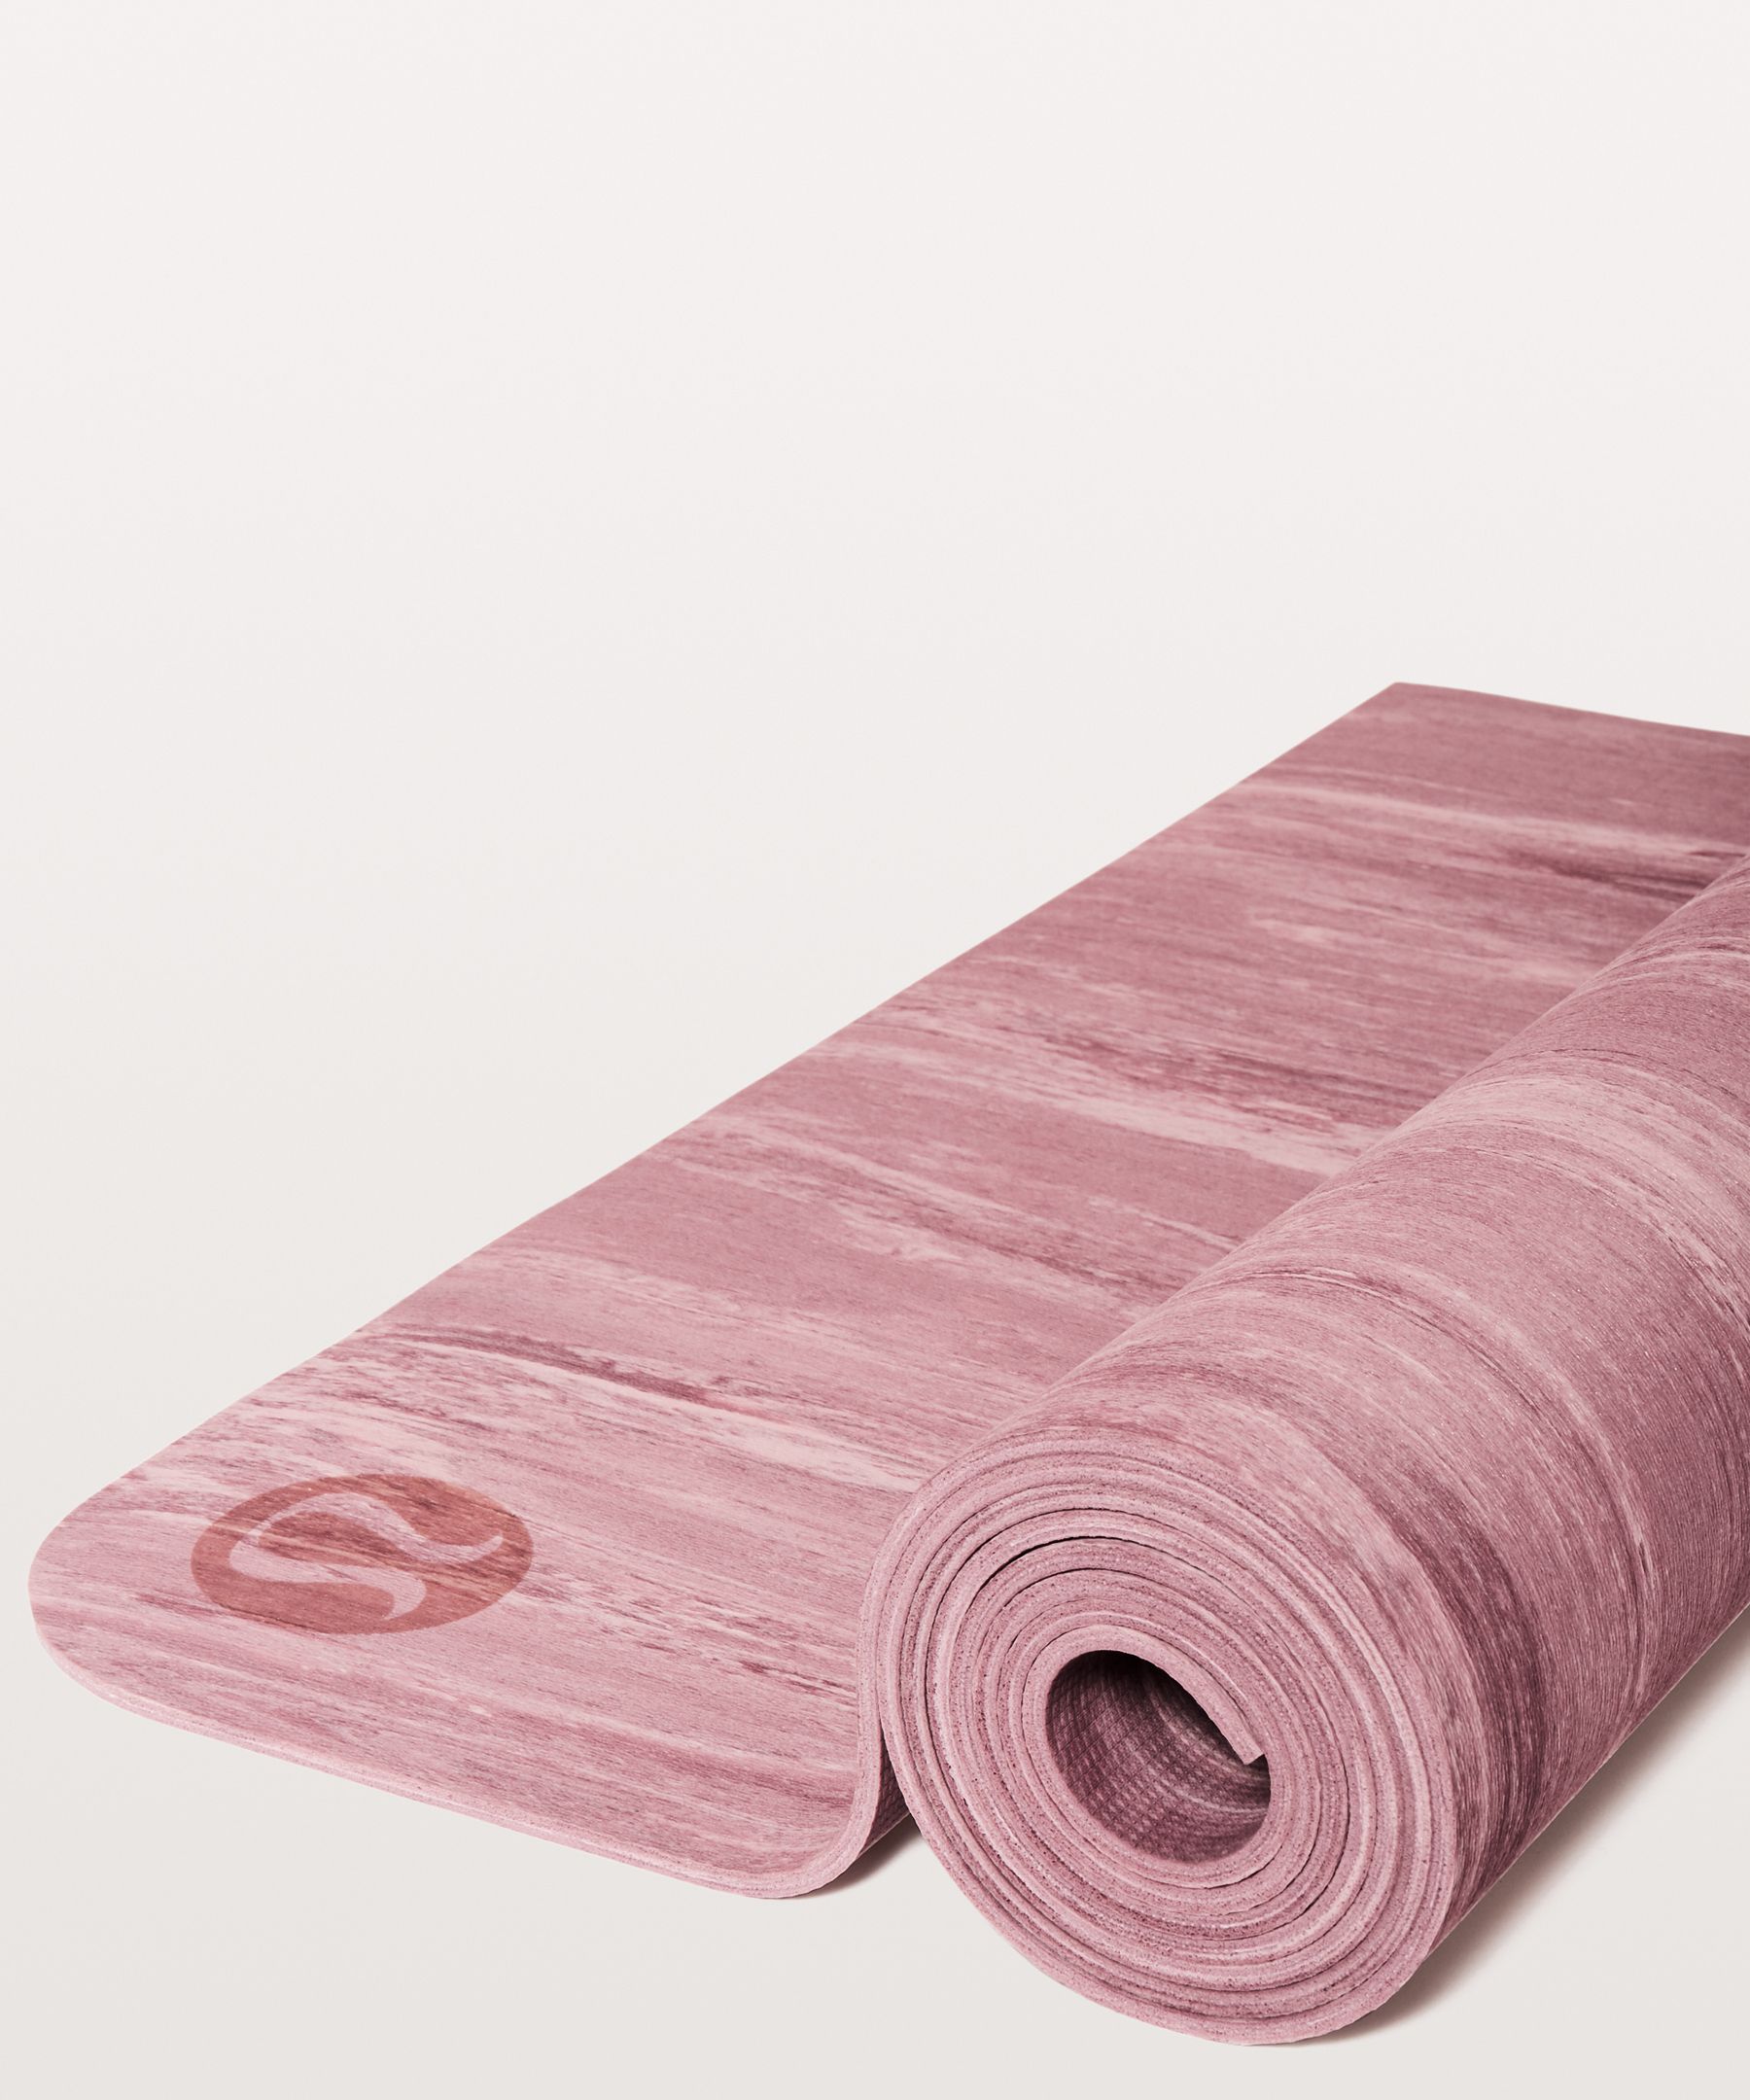 Lululemon Yoga Mat Review 3mm Vs 5mm Led